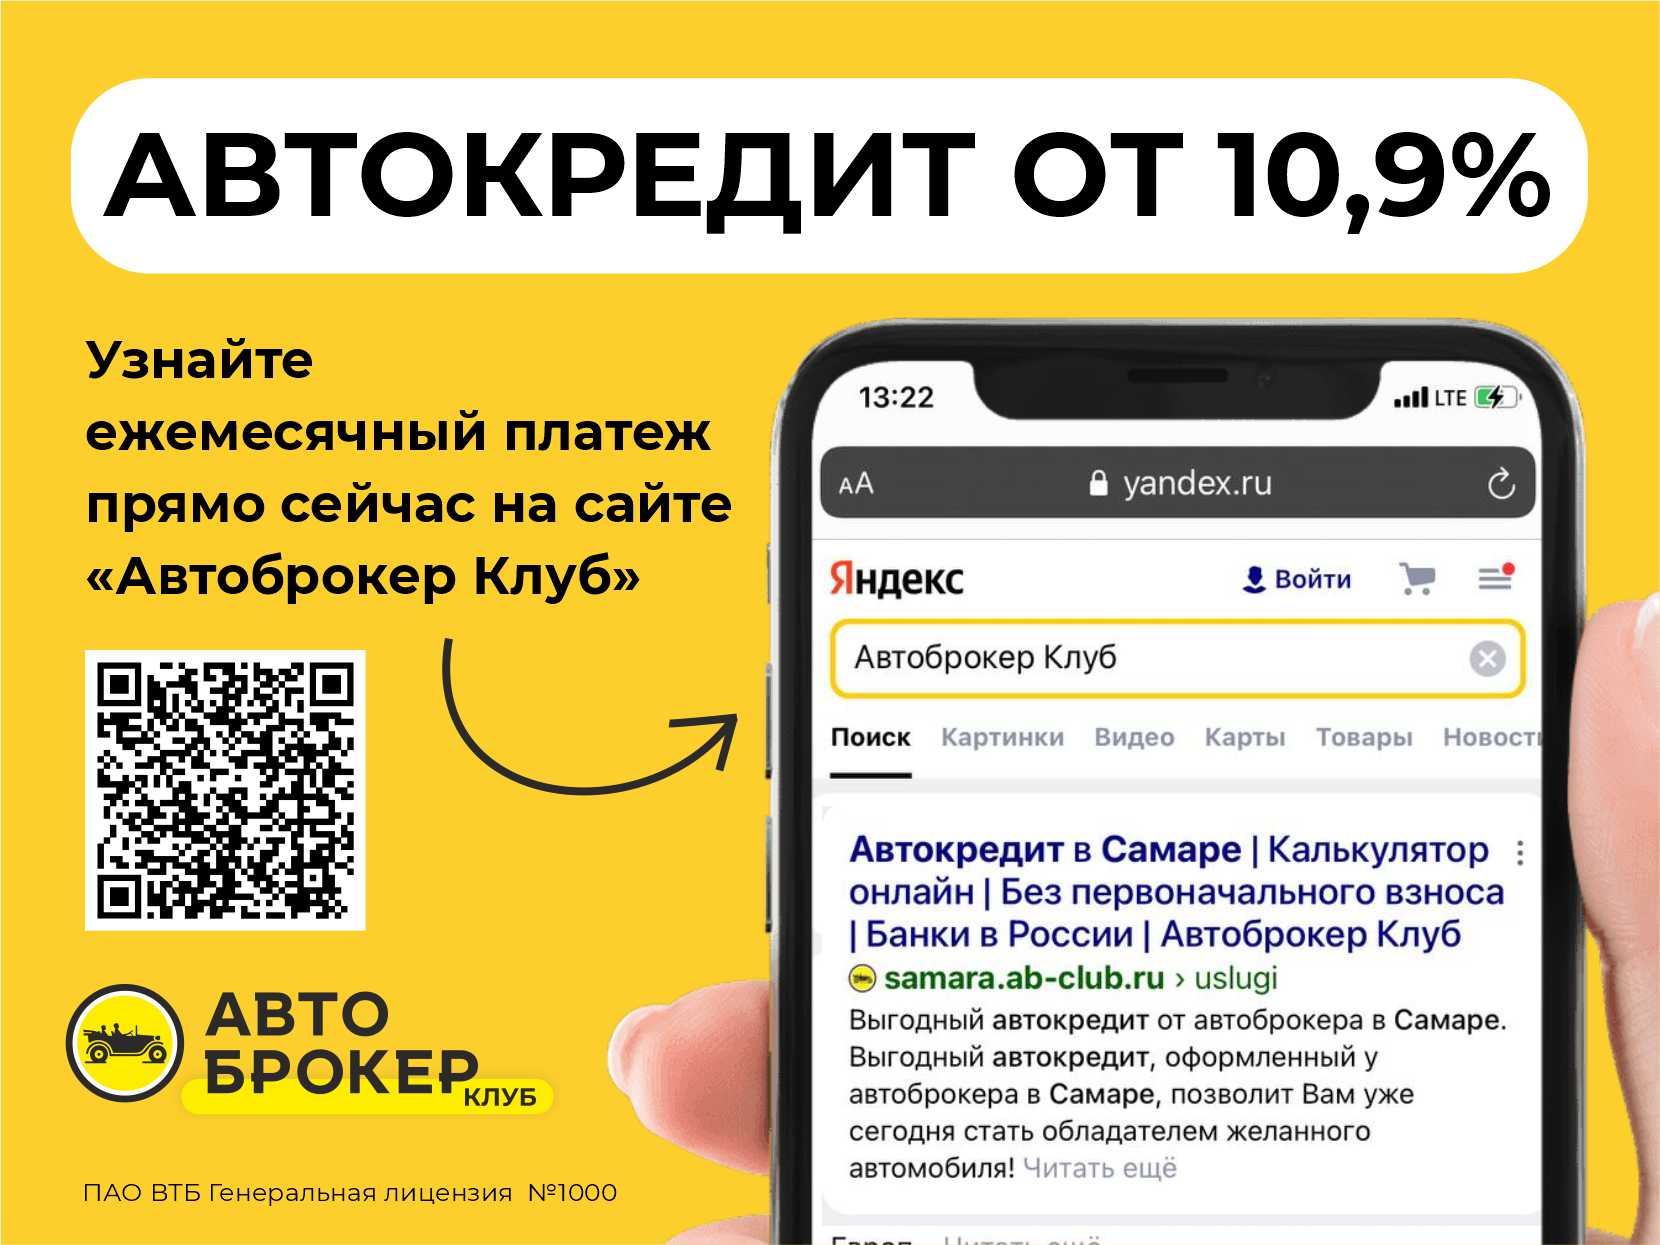 Купить б/у УАЗ Patriot, 2019 год, 150 л.с. во Владимире